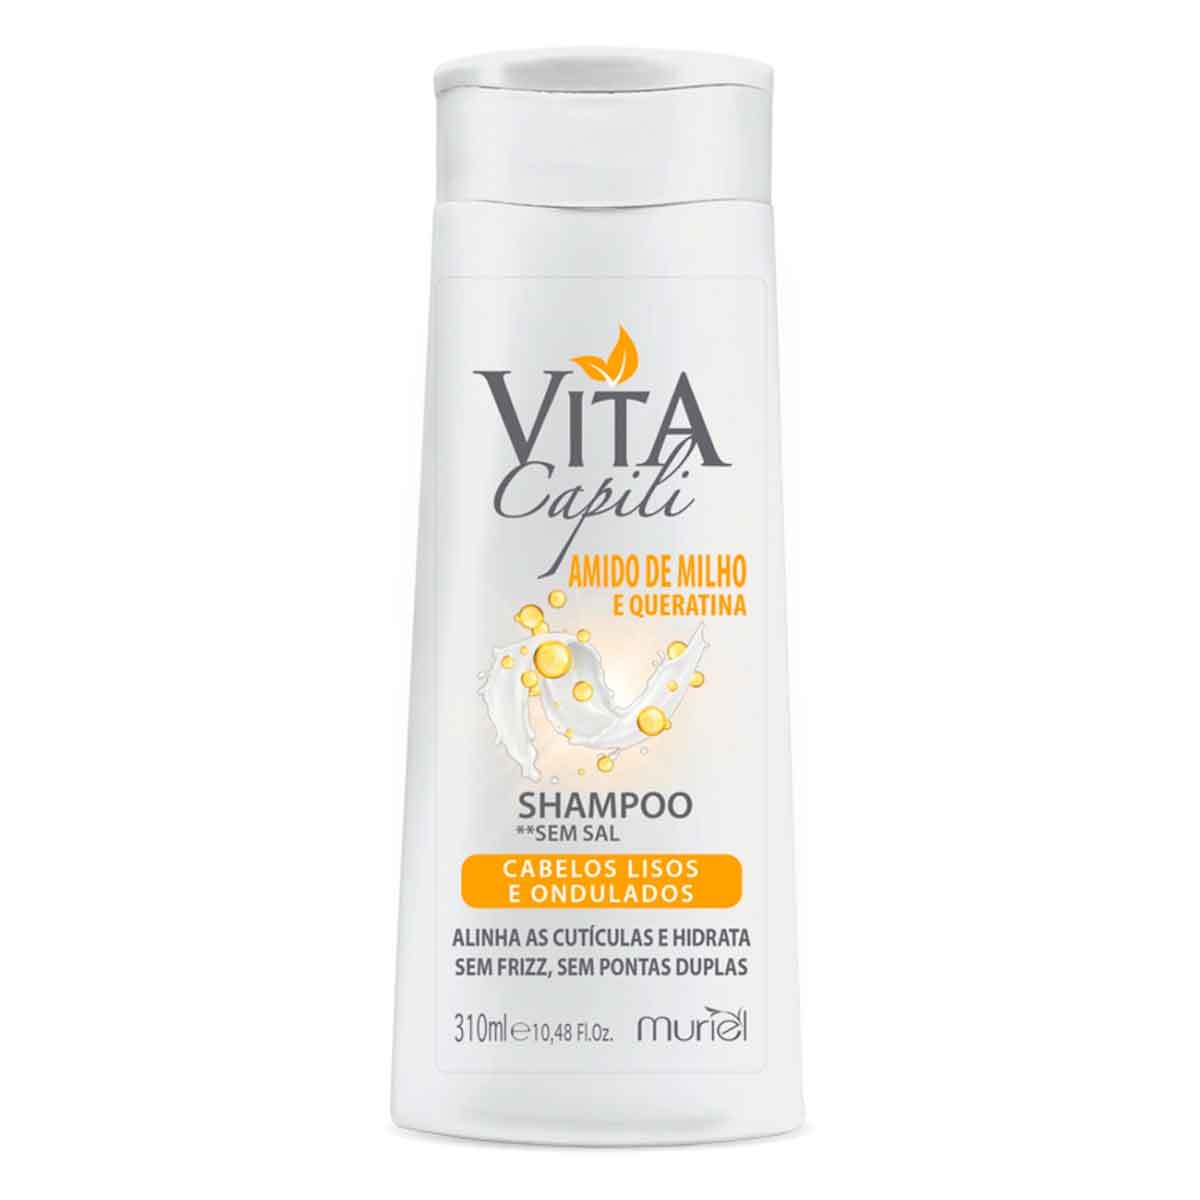 Shampoo Vita Capili Amido de Milho com 310ml Muriel 310ml